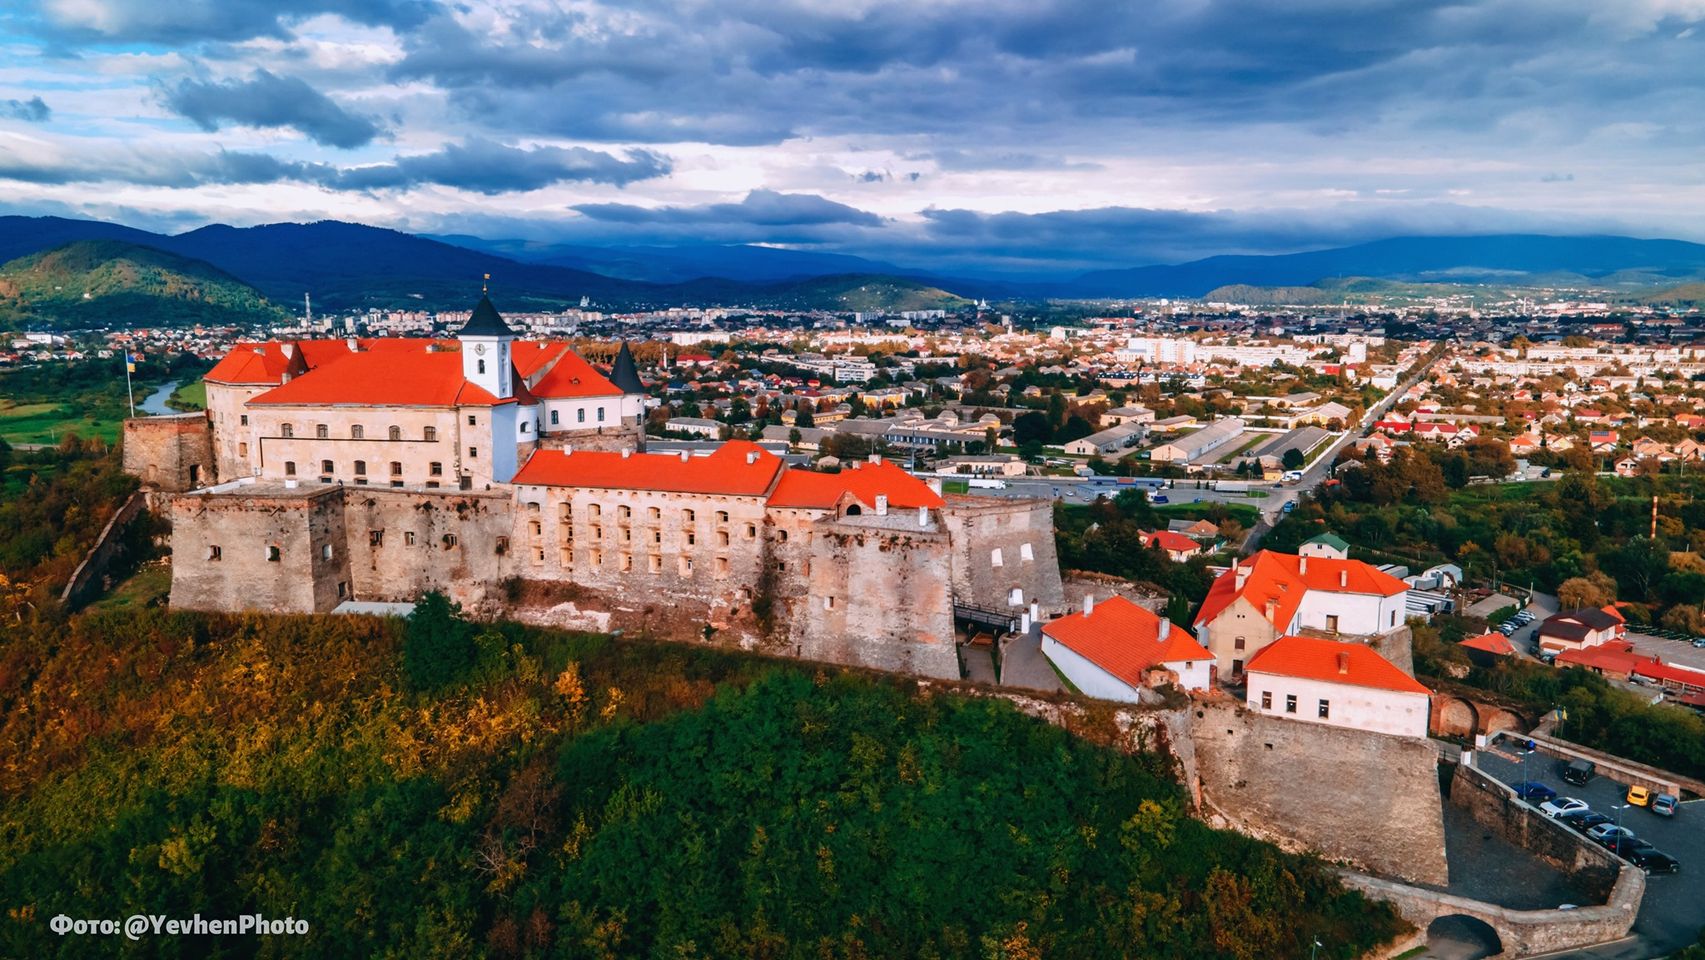 Майже 200 тисяч гостей відвідали замок Паланок у Мукачеві у 2021 році